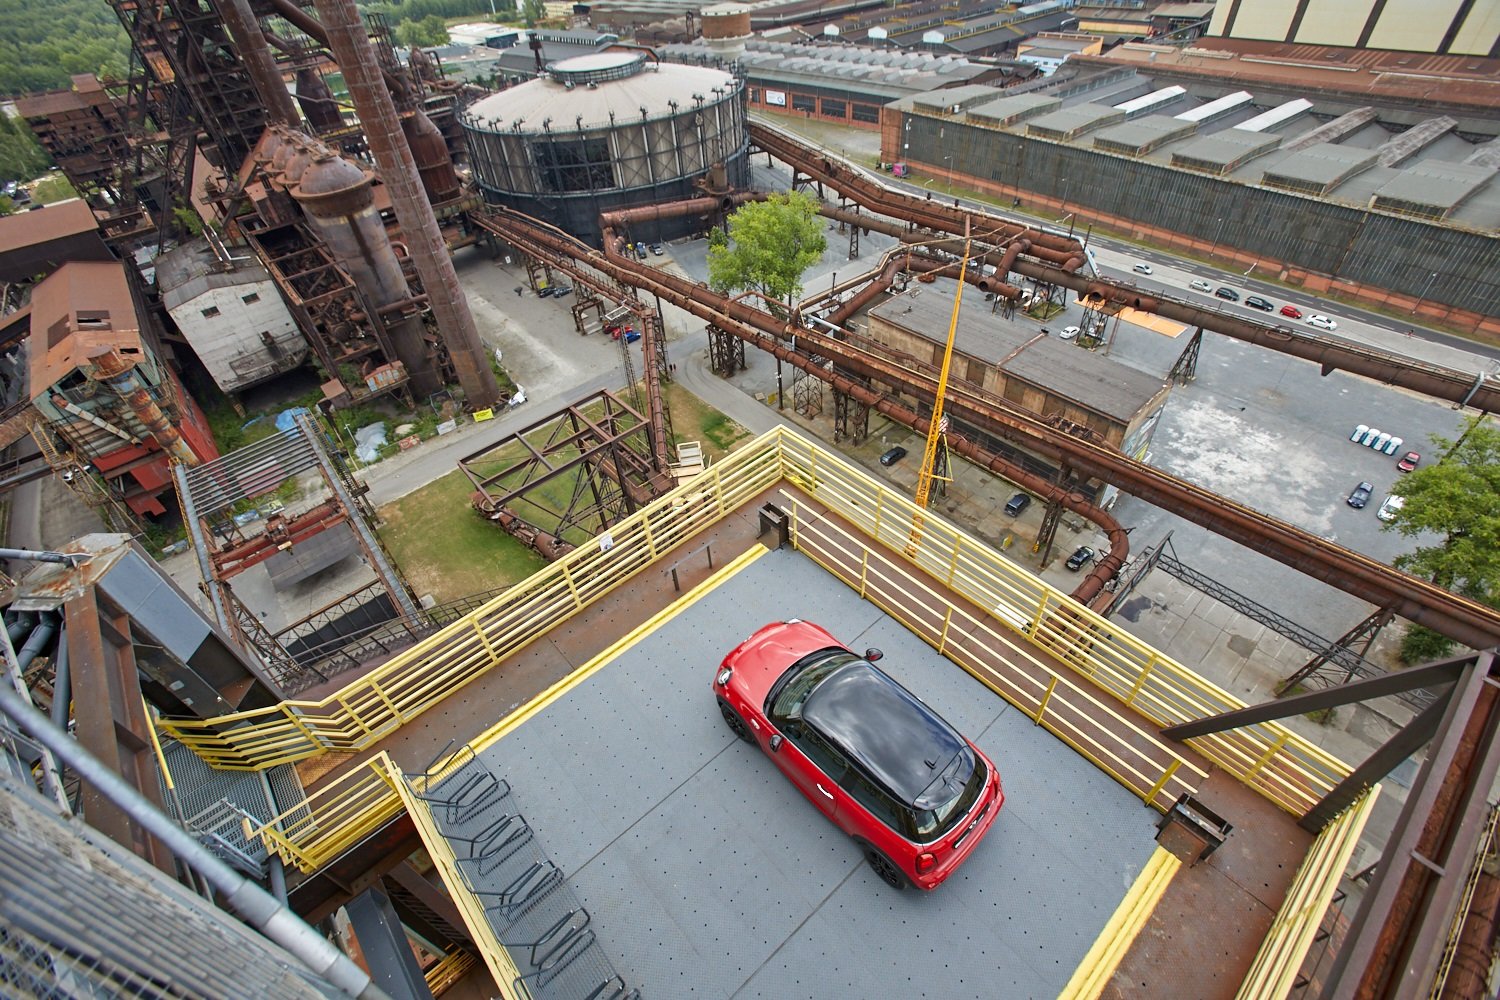 MINI John Cooper Works se vznáší 65 metrů nad Ostravou. Nejvýše umístěný automobil nad terénem v ČR stojí na Bolt Tower v Dolních Vítkovicích.